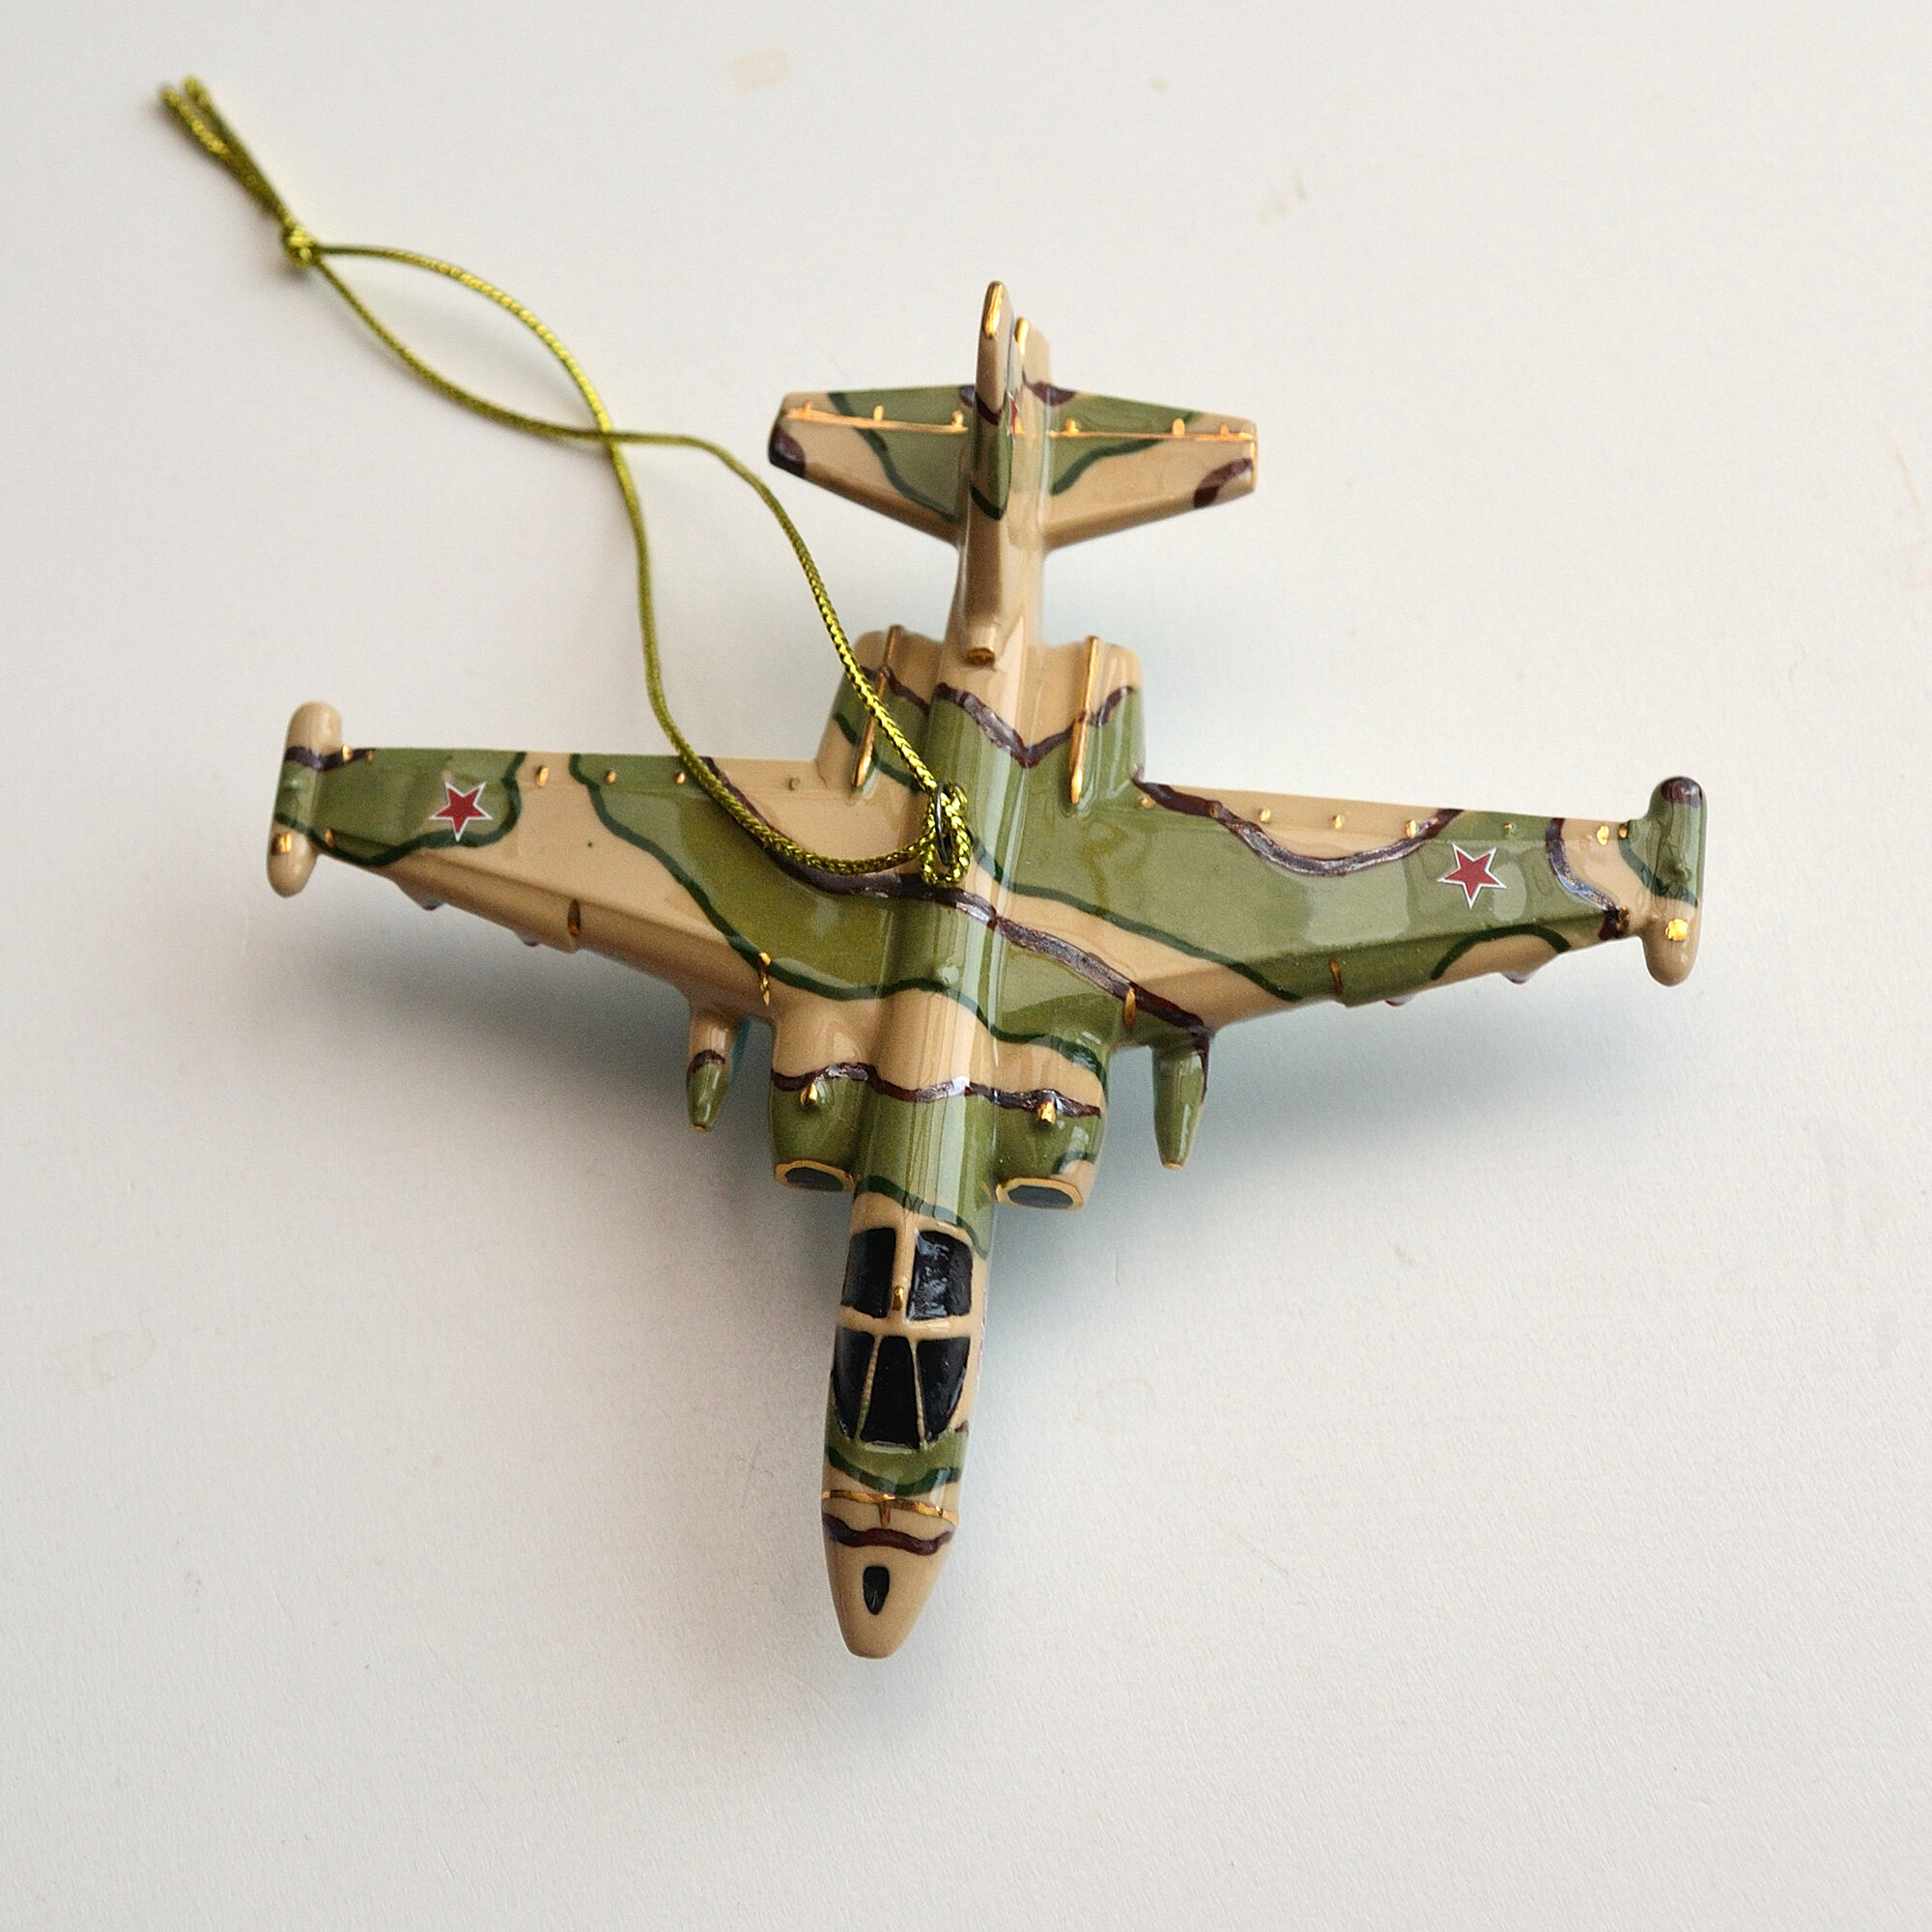 Елочная игрушка из фарфора самолет СУ-25 Грач камуфляж хаки